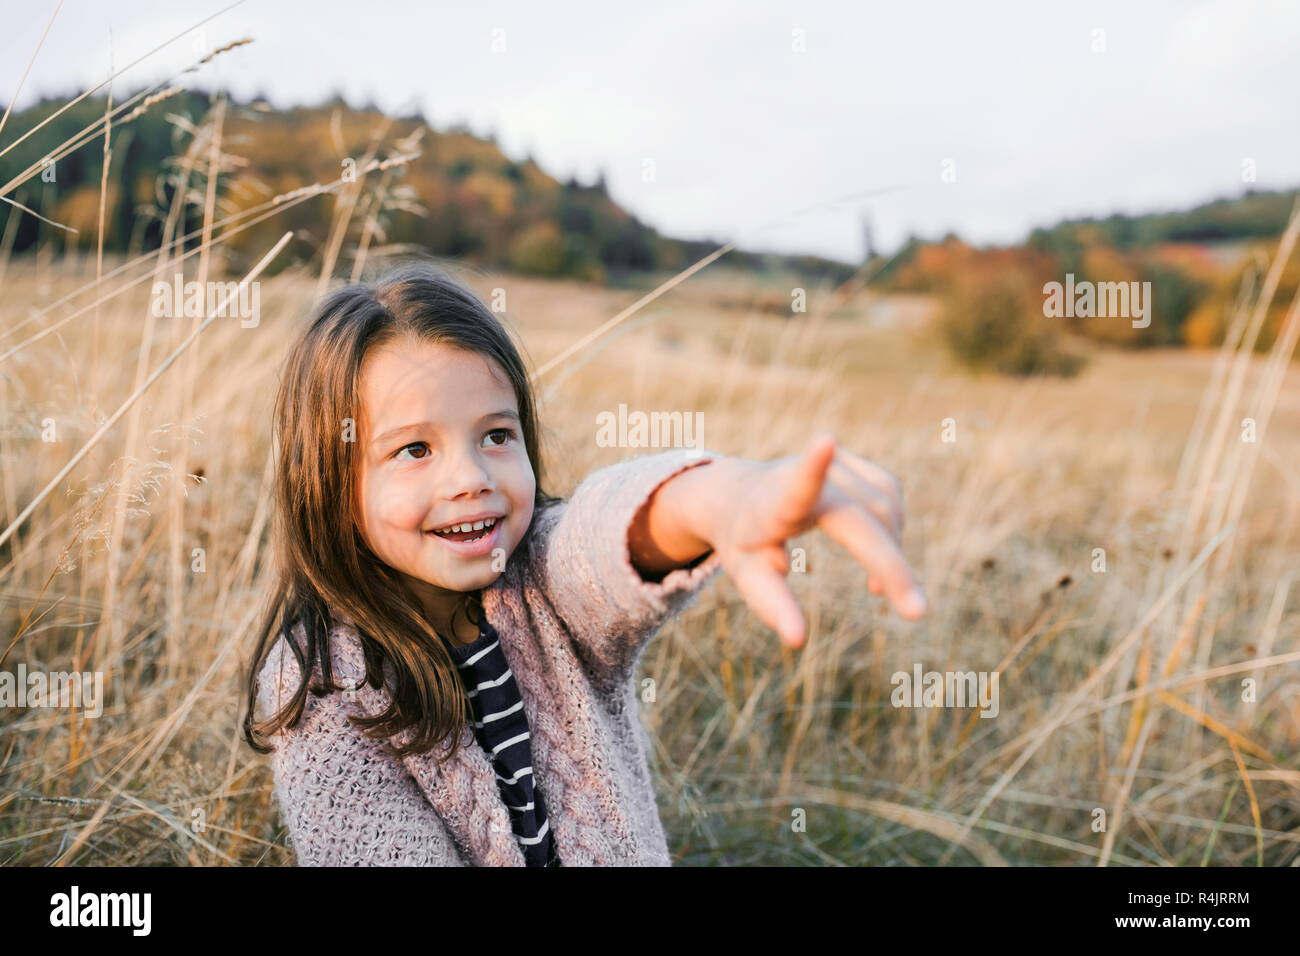 Ein kleines Mädchen stand im Herbst Natur, zeigen mit dem Finger auf etwas. Stockfoto